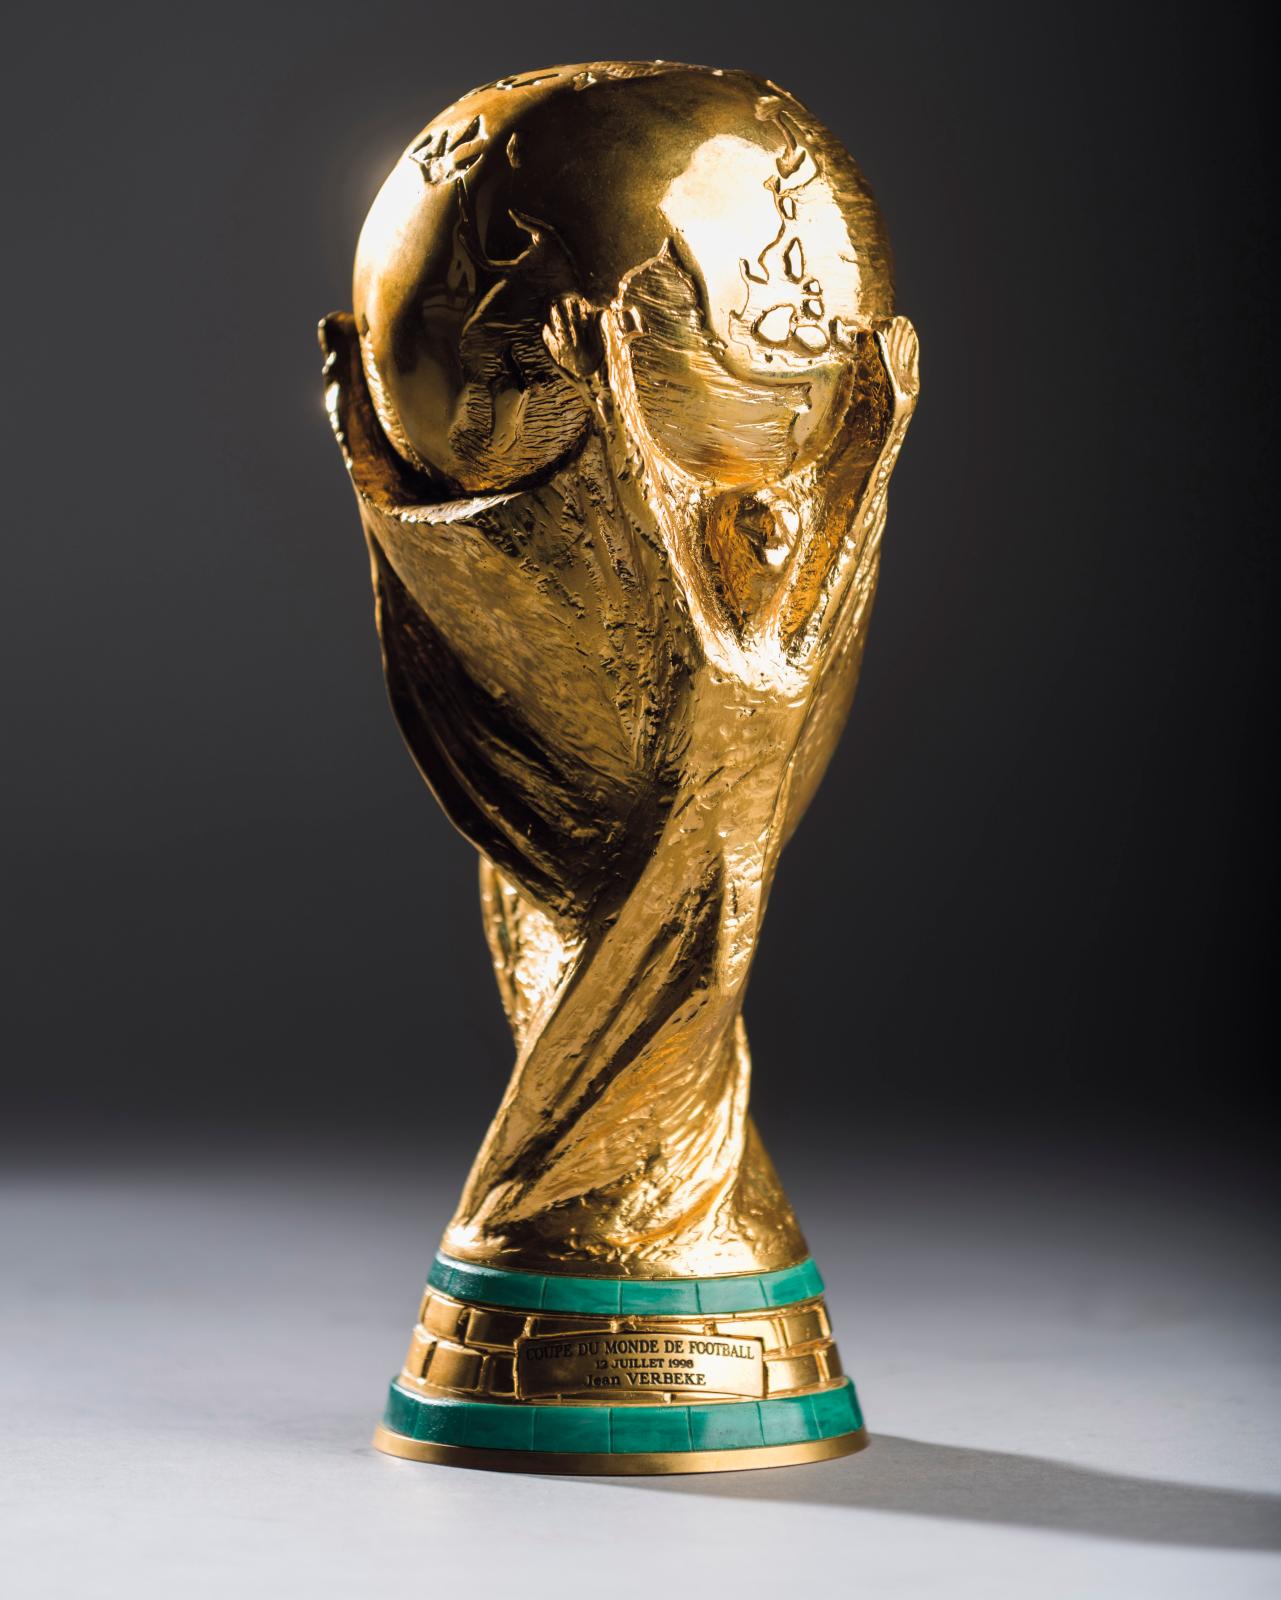 122 800 € France 1998, réplique en métal doré de la Coupe du monde de football du 12 juillet 1998 dédiée à Monsieur Verbeke, h. 28 cm, on y joint une 